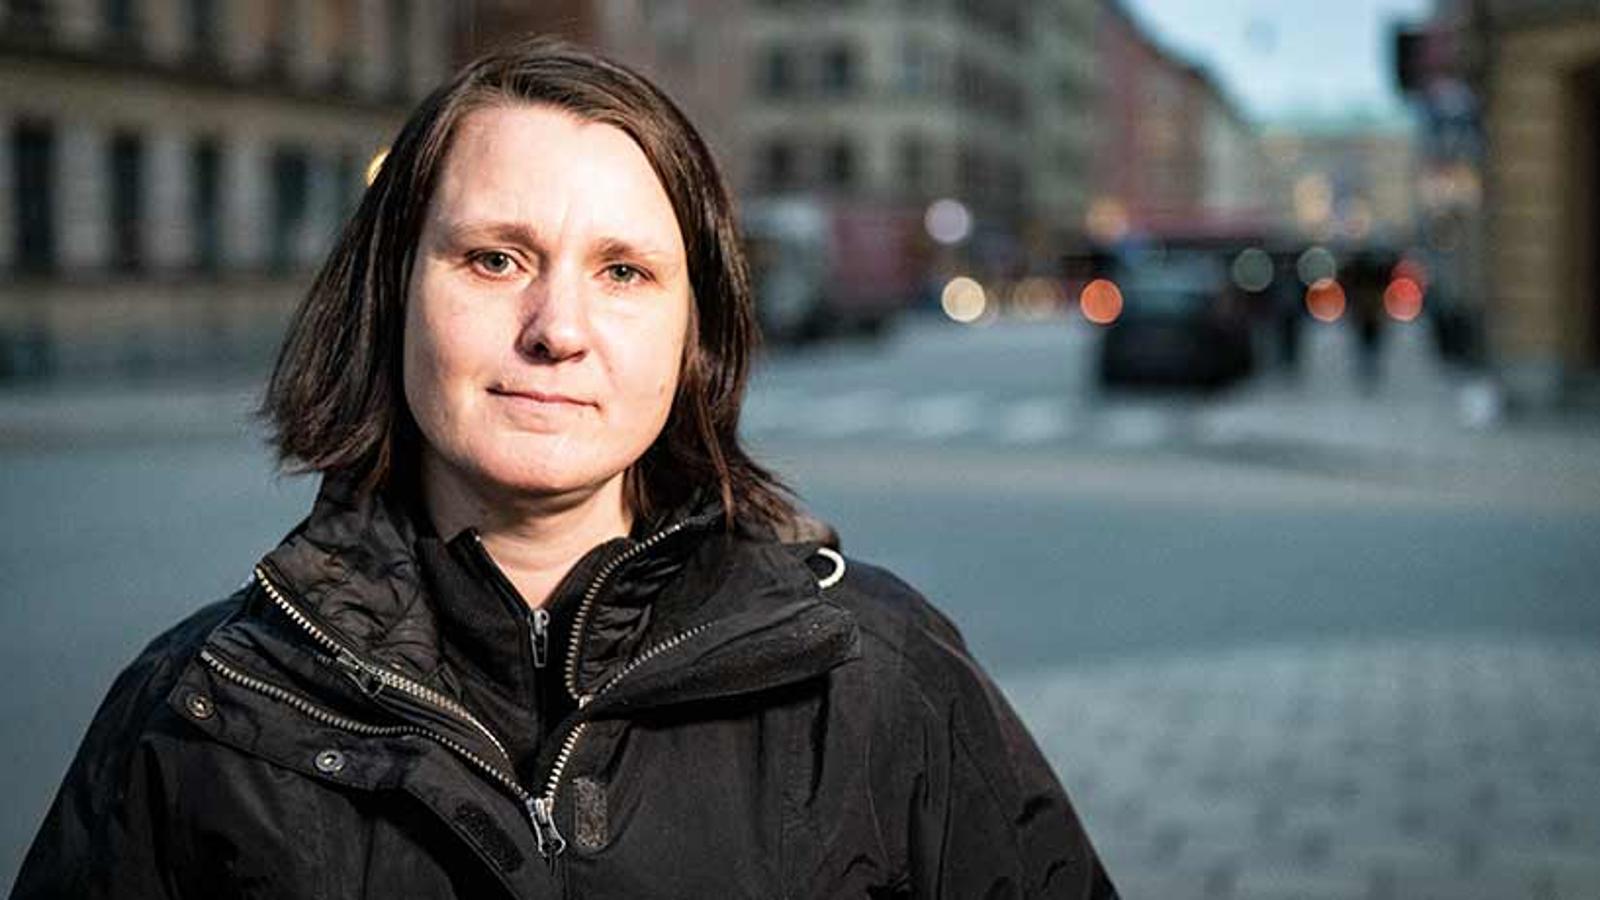 Porträttbild av Kamilla Lindstedt som tittar in i kameran. Hon står utomhus på en gatan, och i bakgrunden syns byggnader.